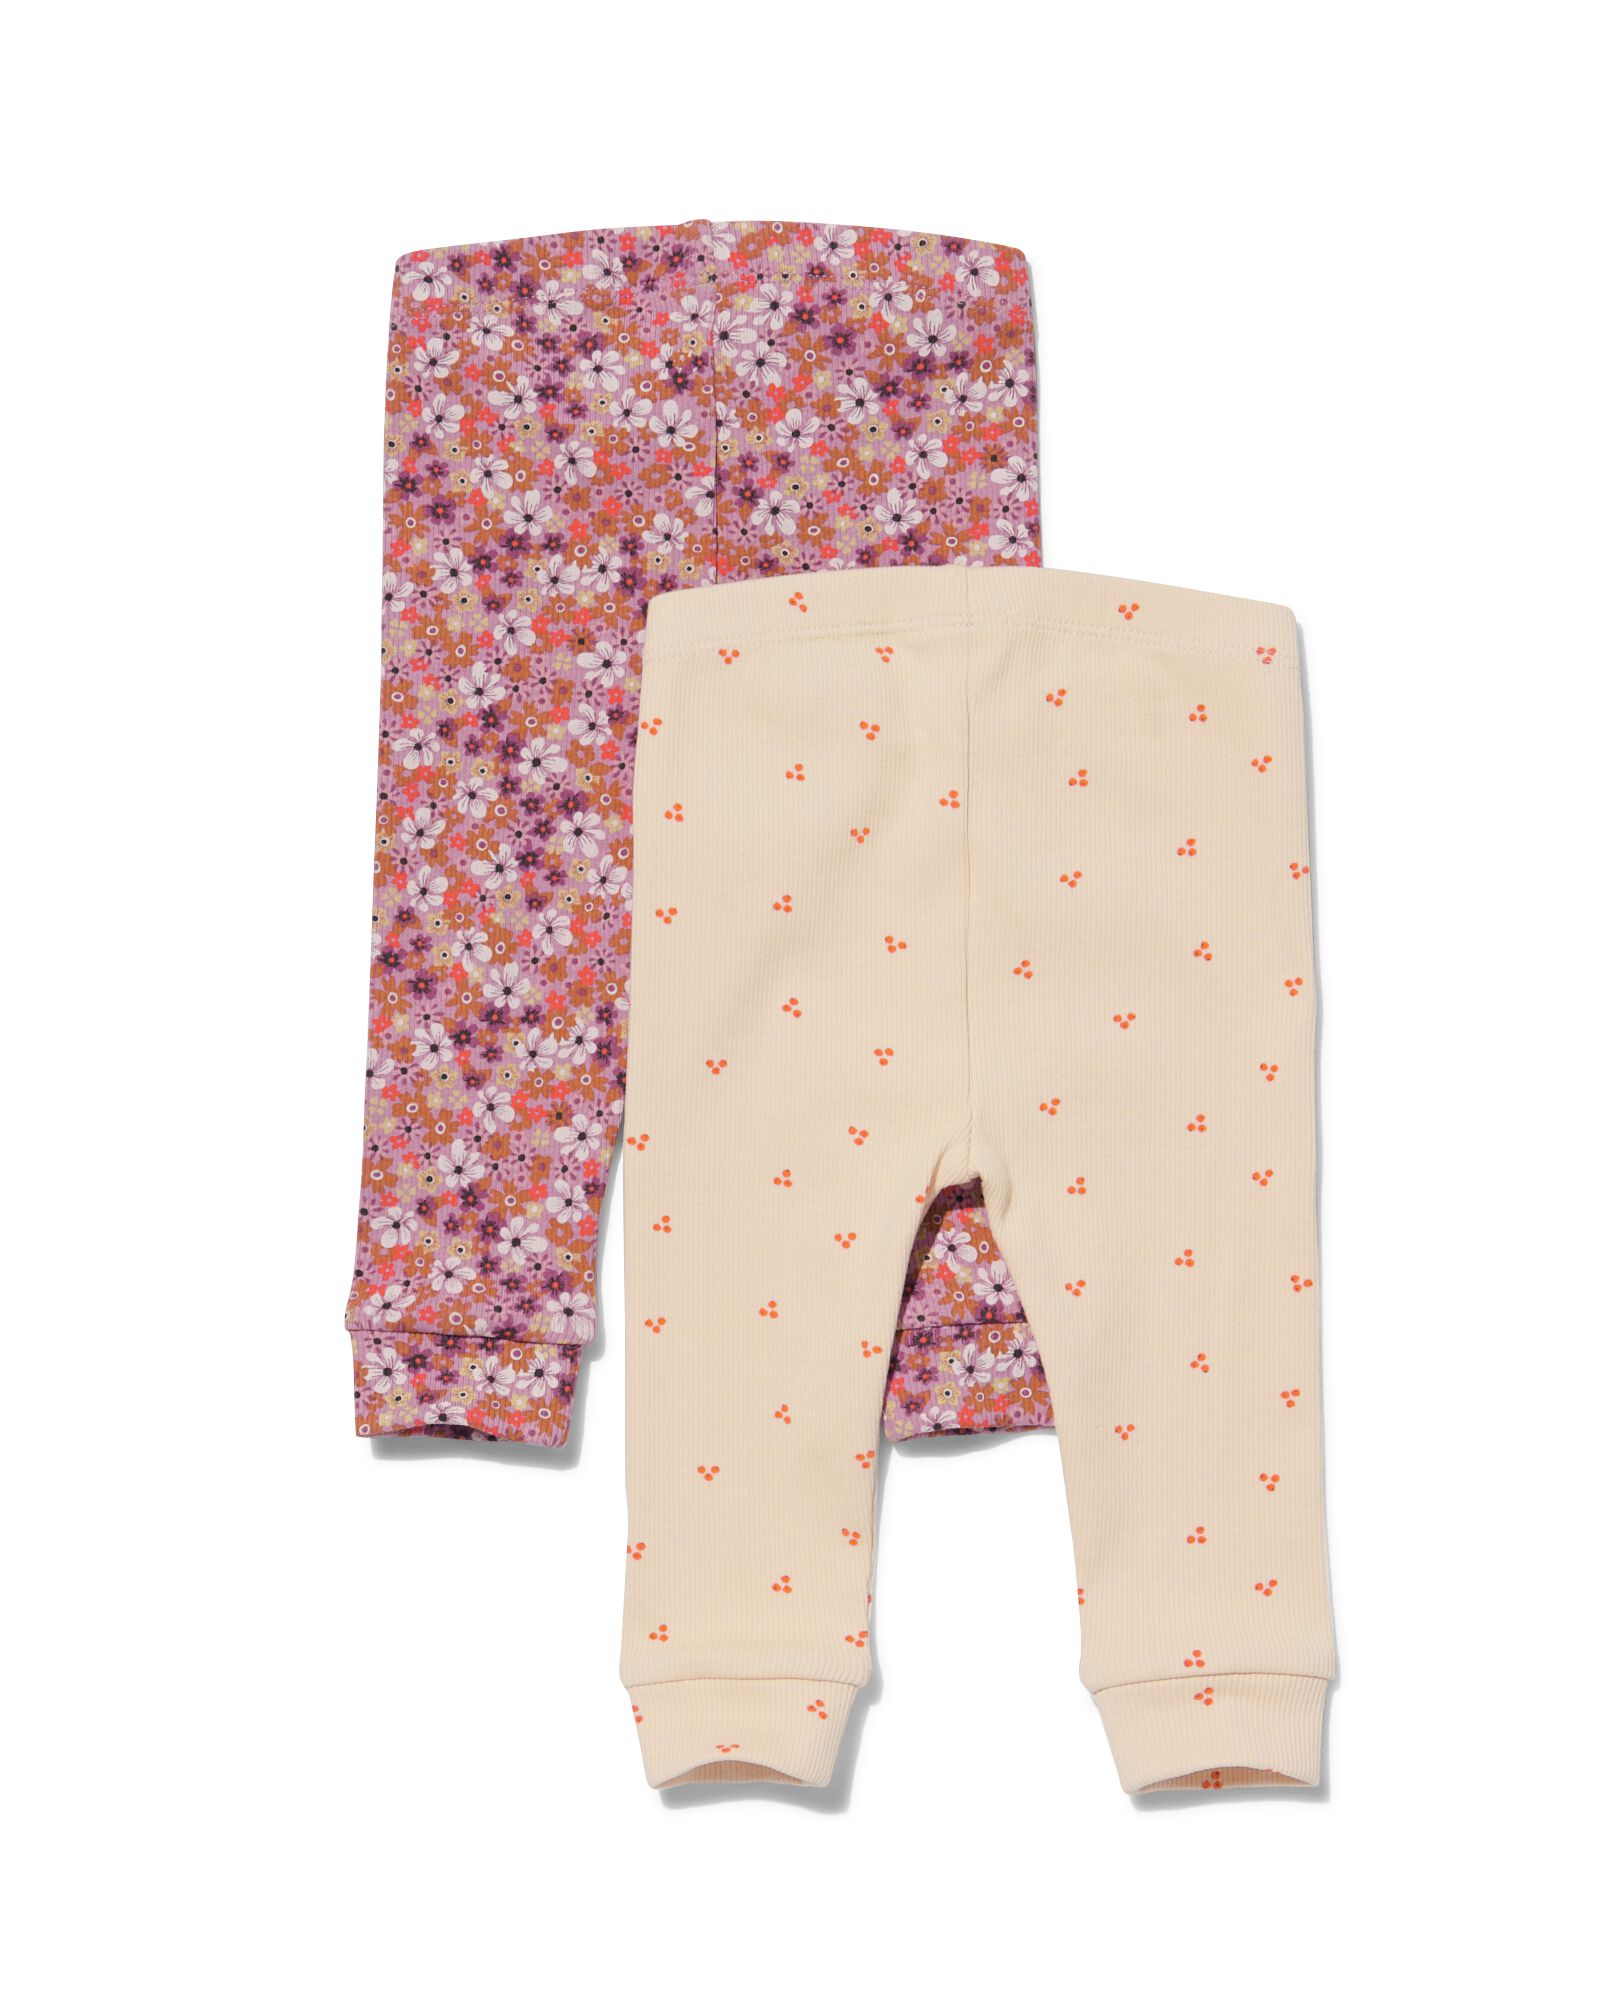 2 leggings bébé côtelés - fleurs rose rose - 1000032025 - HEMA